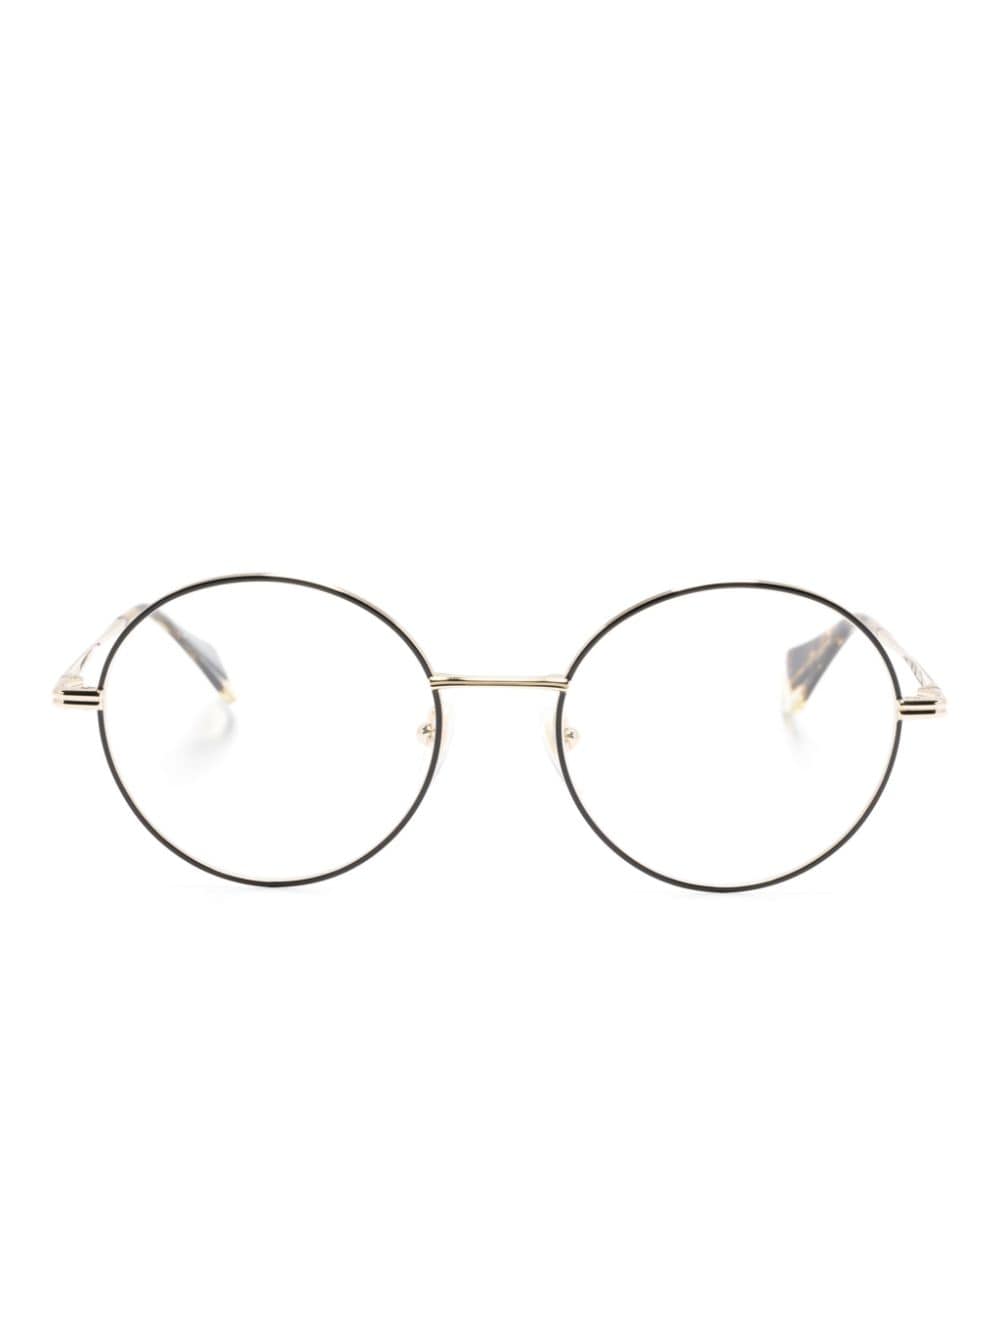 Perla round-frame glasses